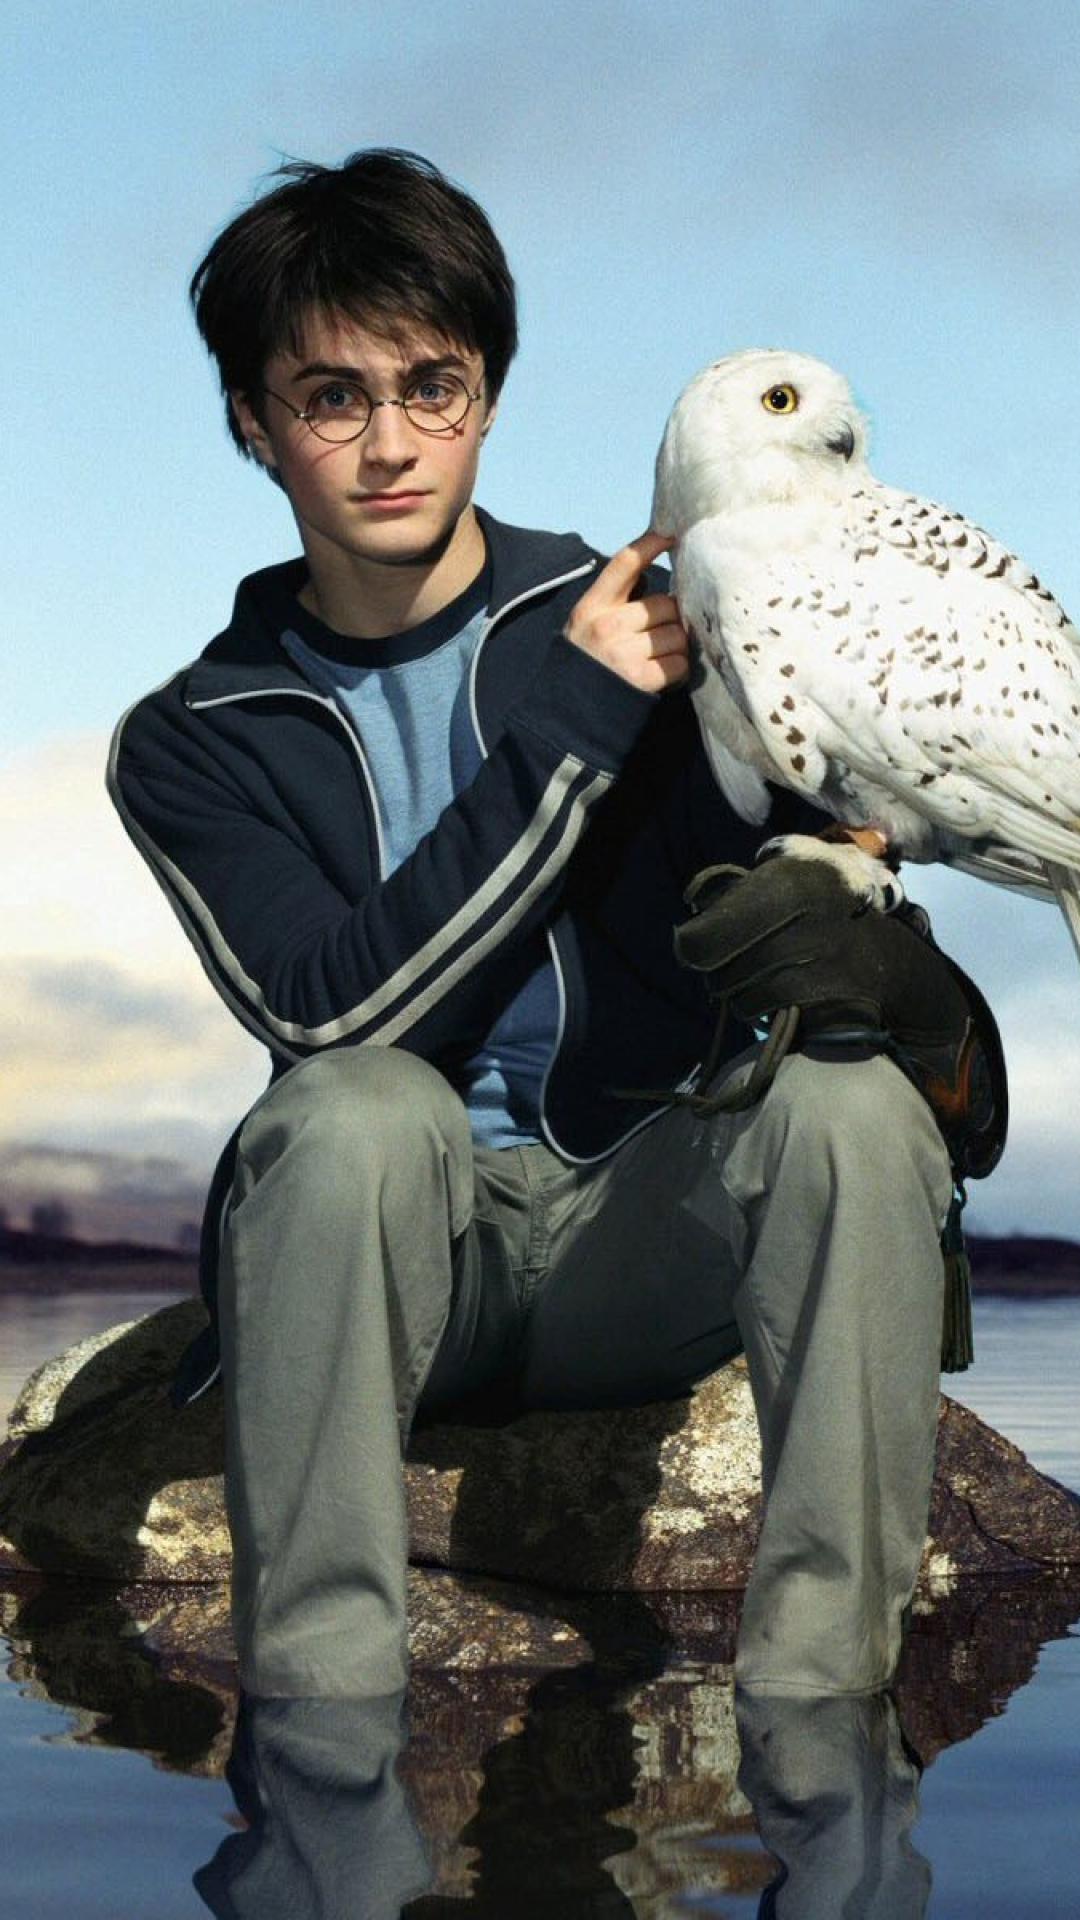 Harry Potter Hedwig Image